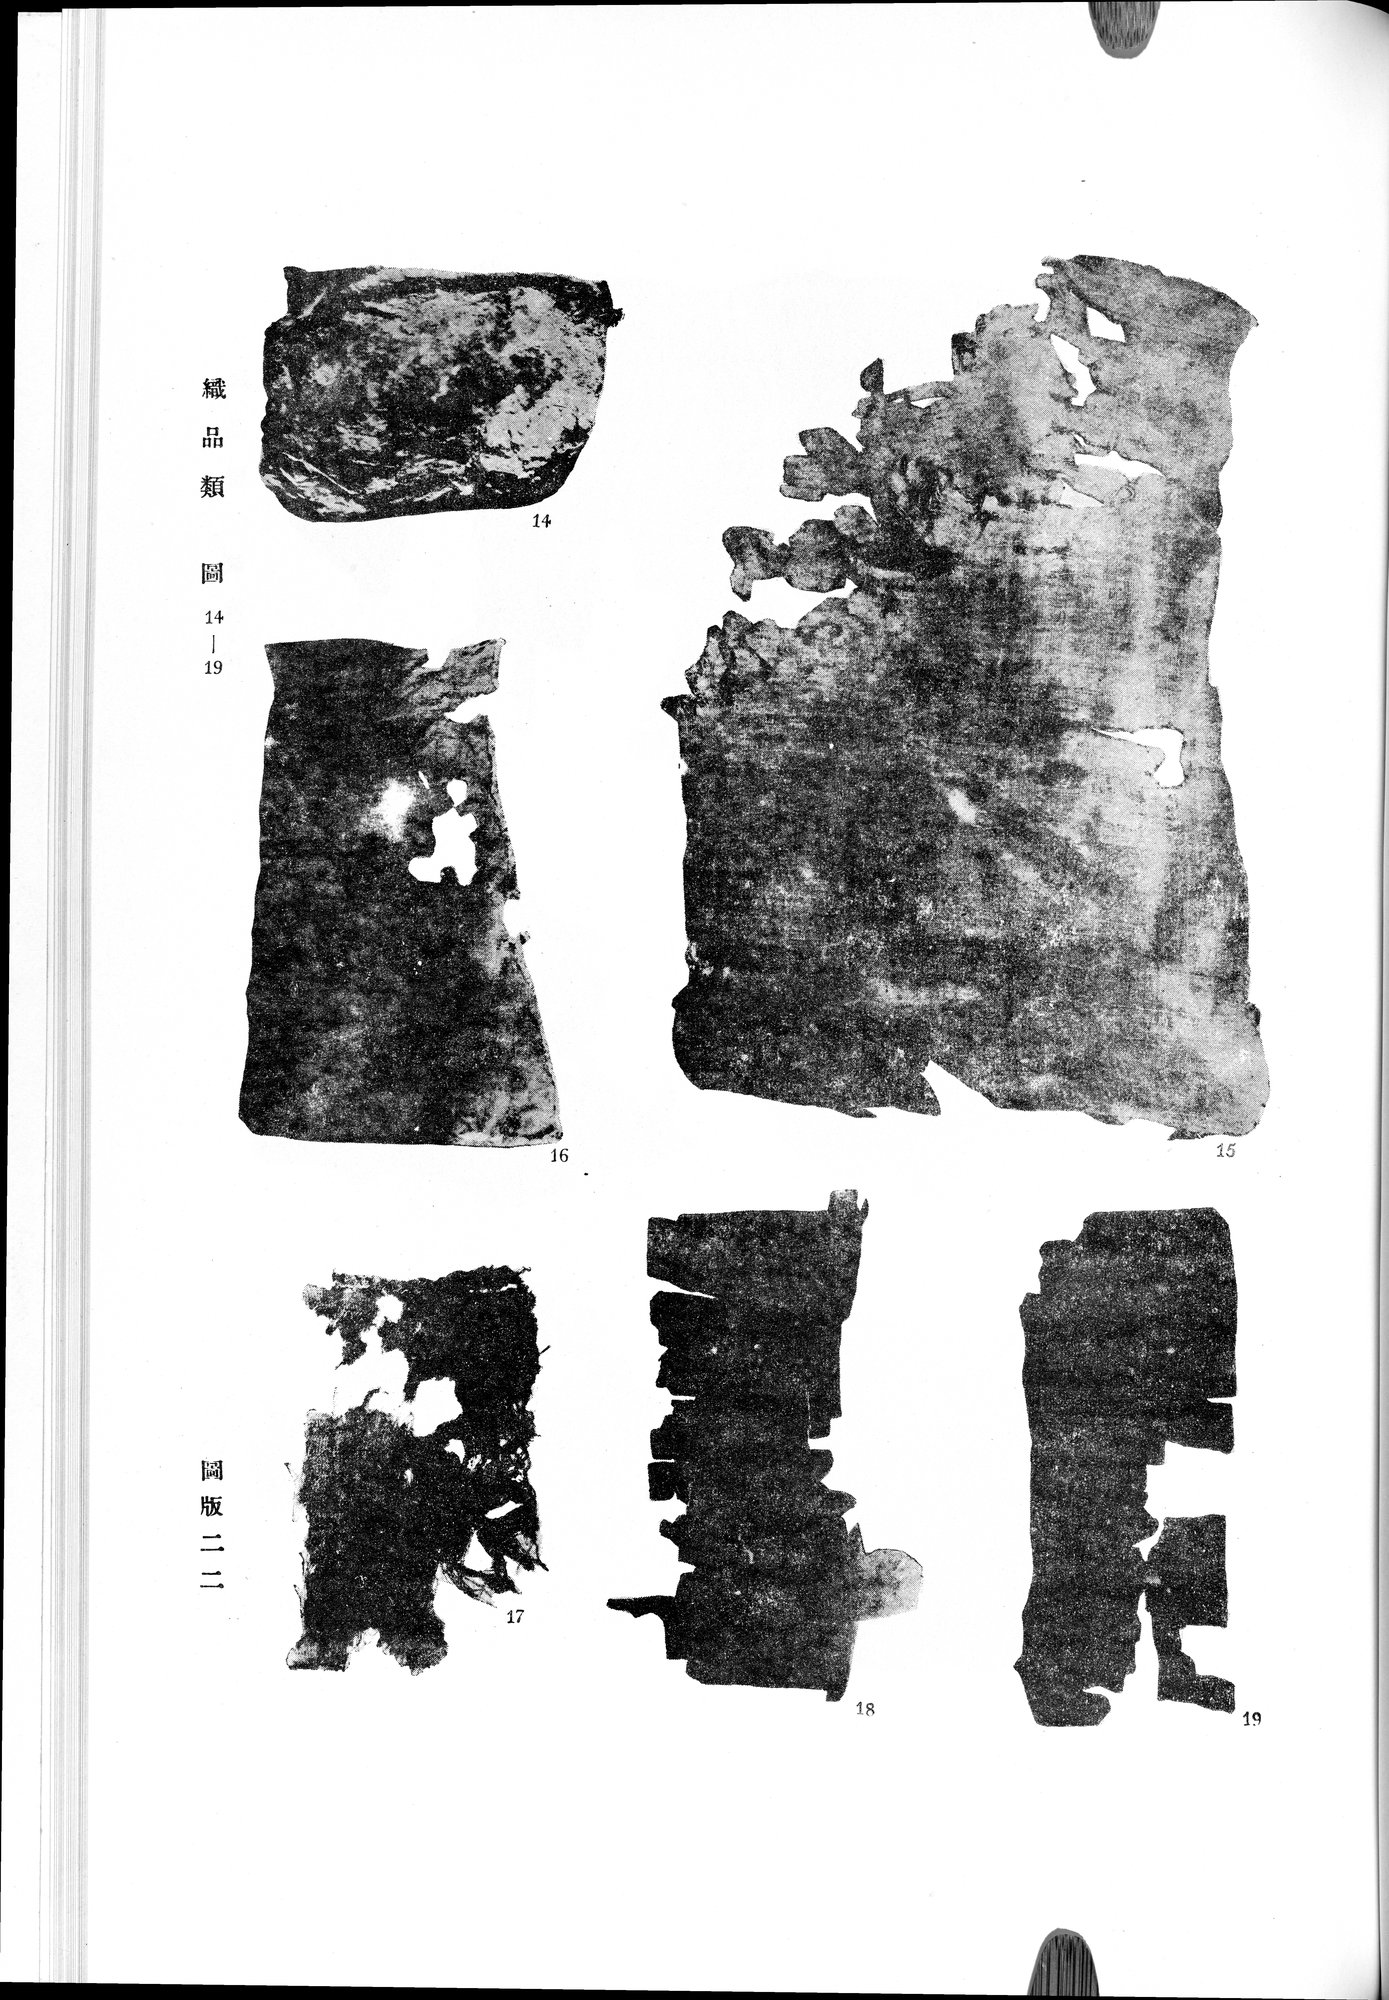 羅布淖爾考古記 : vol.1 / Page 335 (Grayscale High Resolution Image)